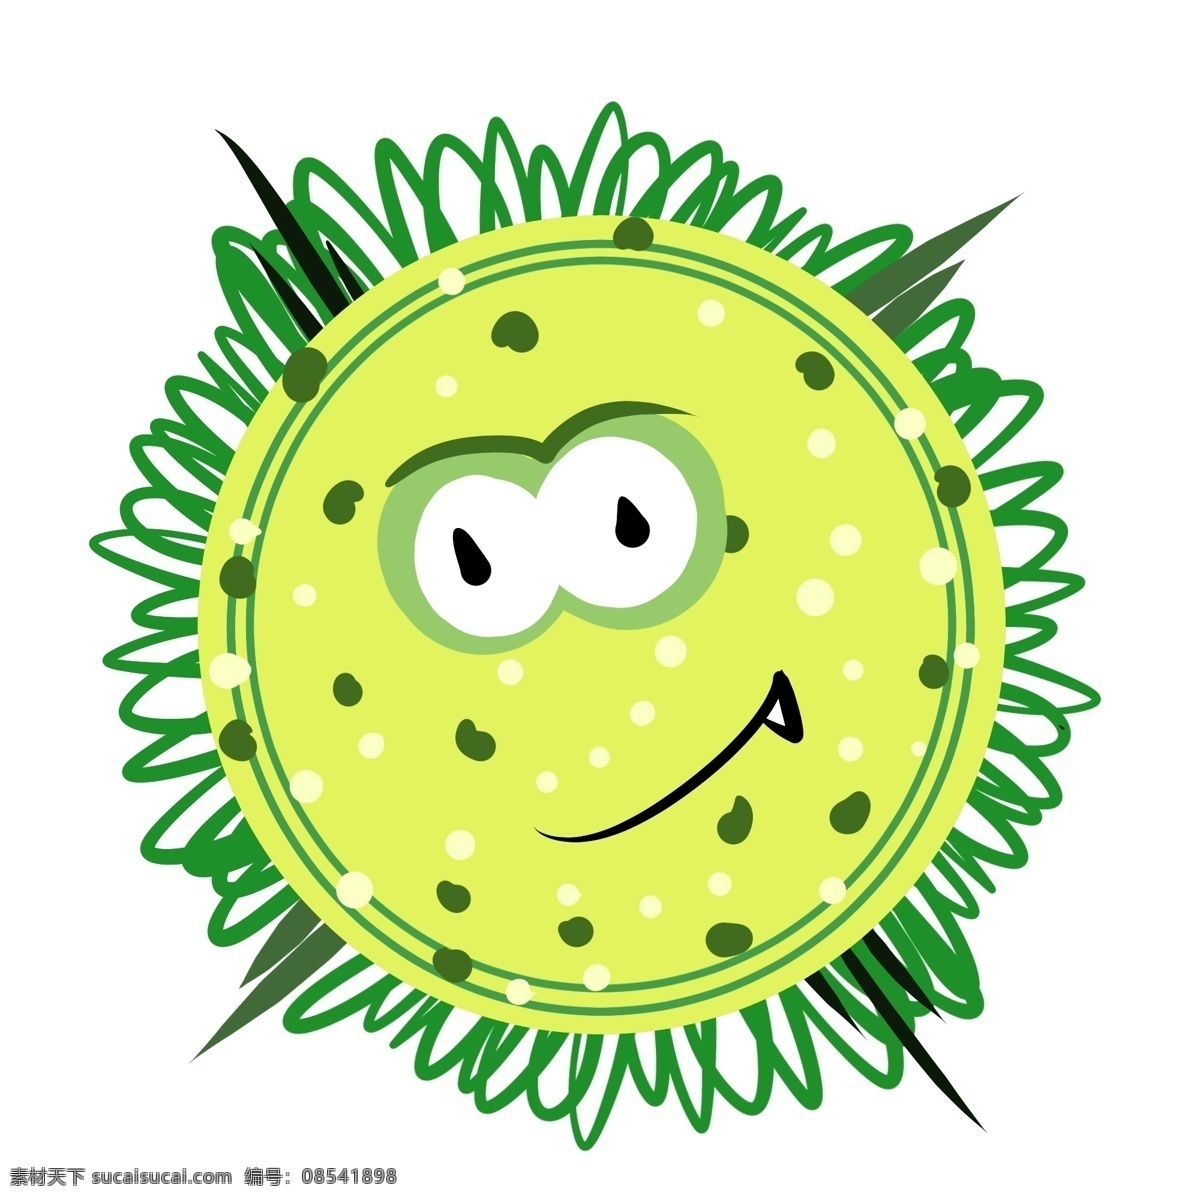 醒目 病毒 卡通 插画 醒目的病毒 细菌插画 卡通插画 病毒插画 有害物质 传染病菌 圆圆的病毒